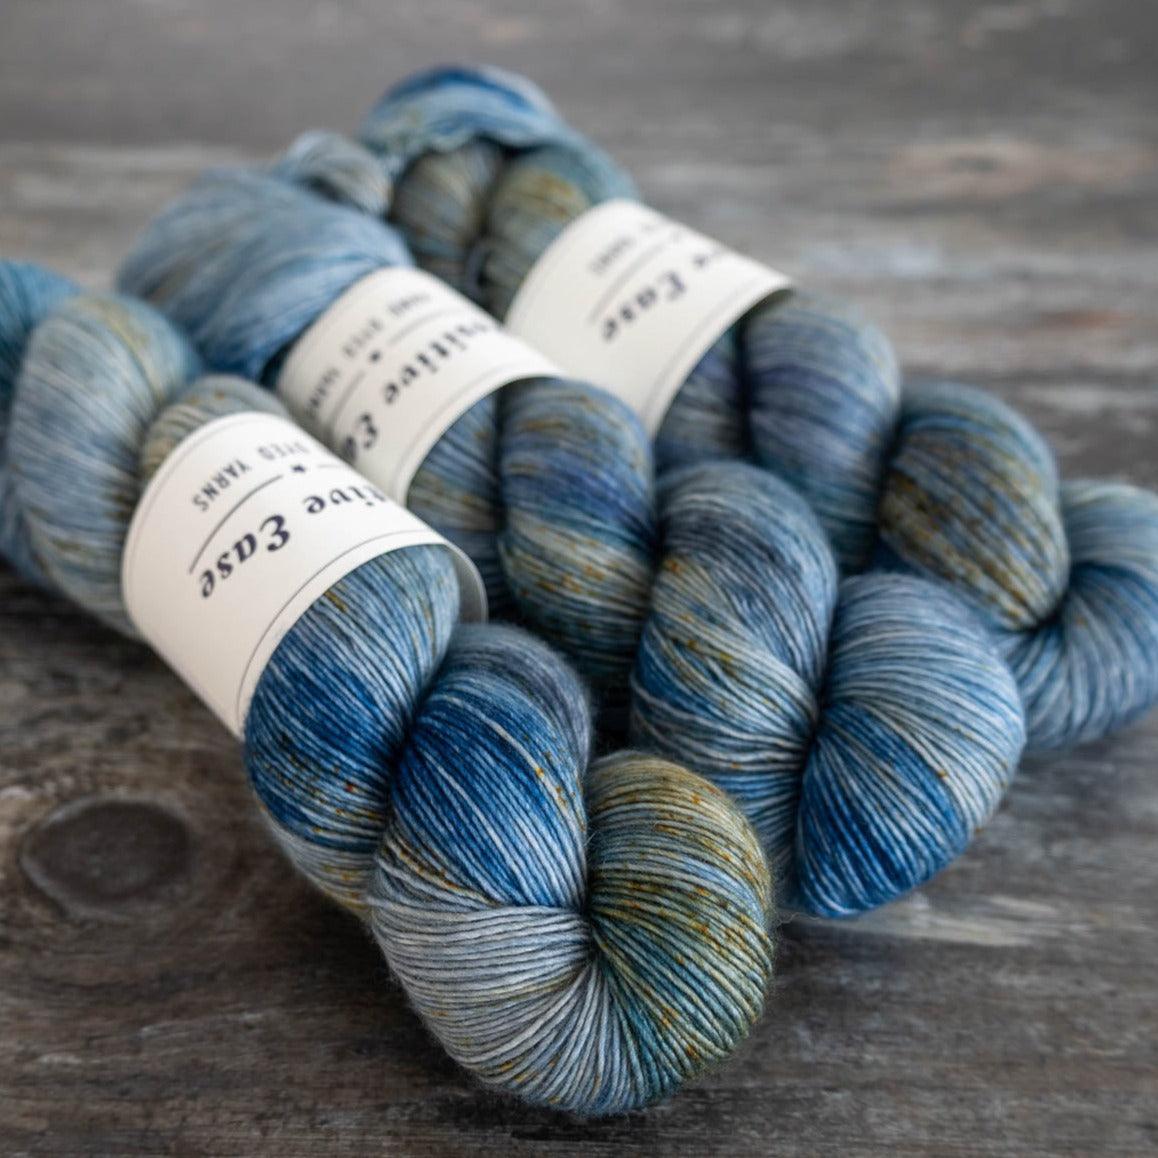 Positive Ease Positive Ease Merino Singles - Native Bluebells - 4ply Knitting Yarn